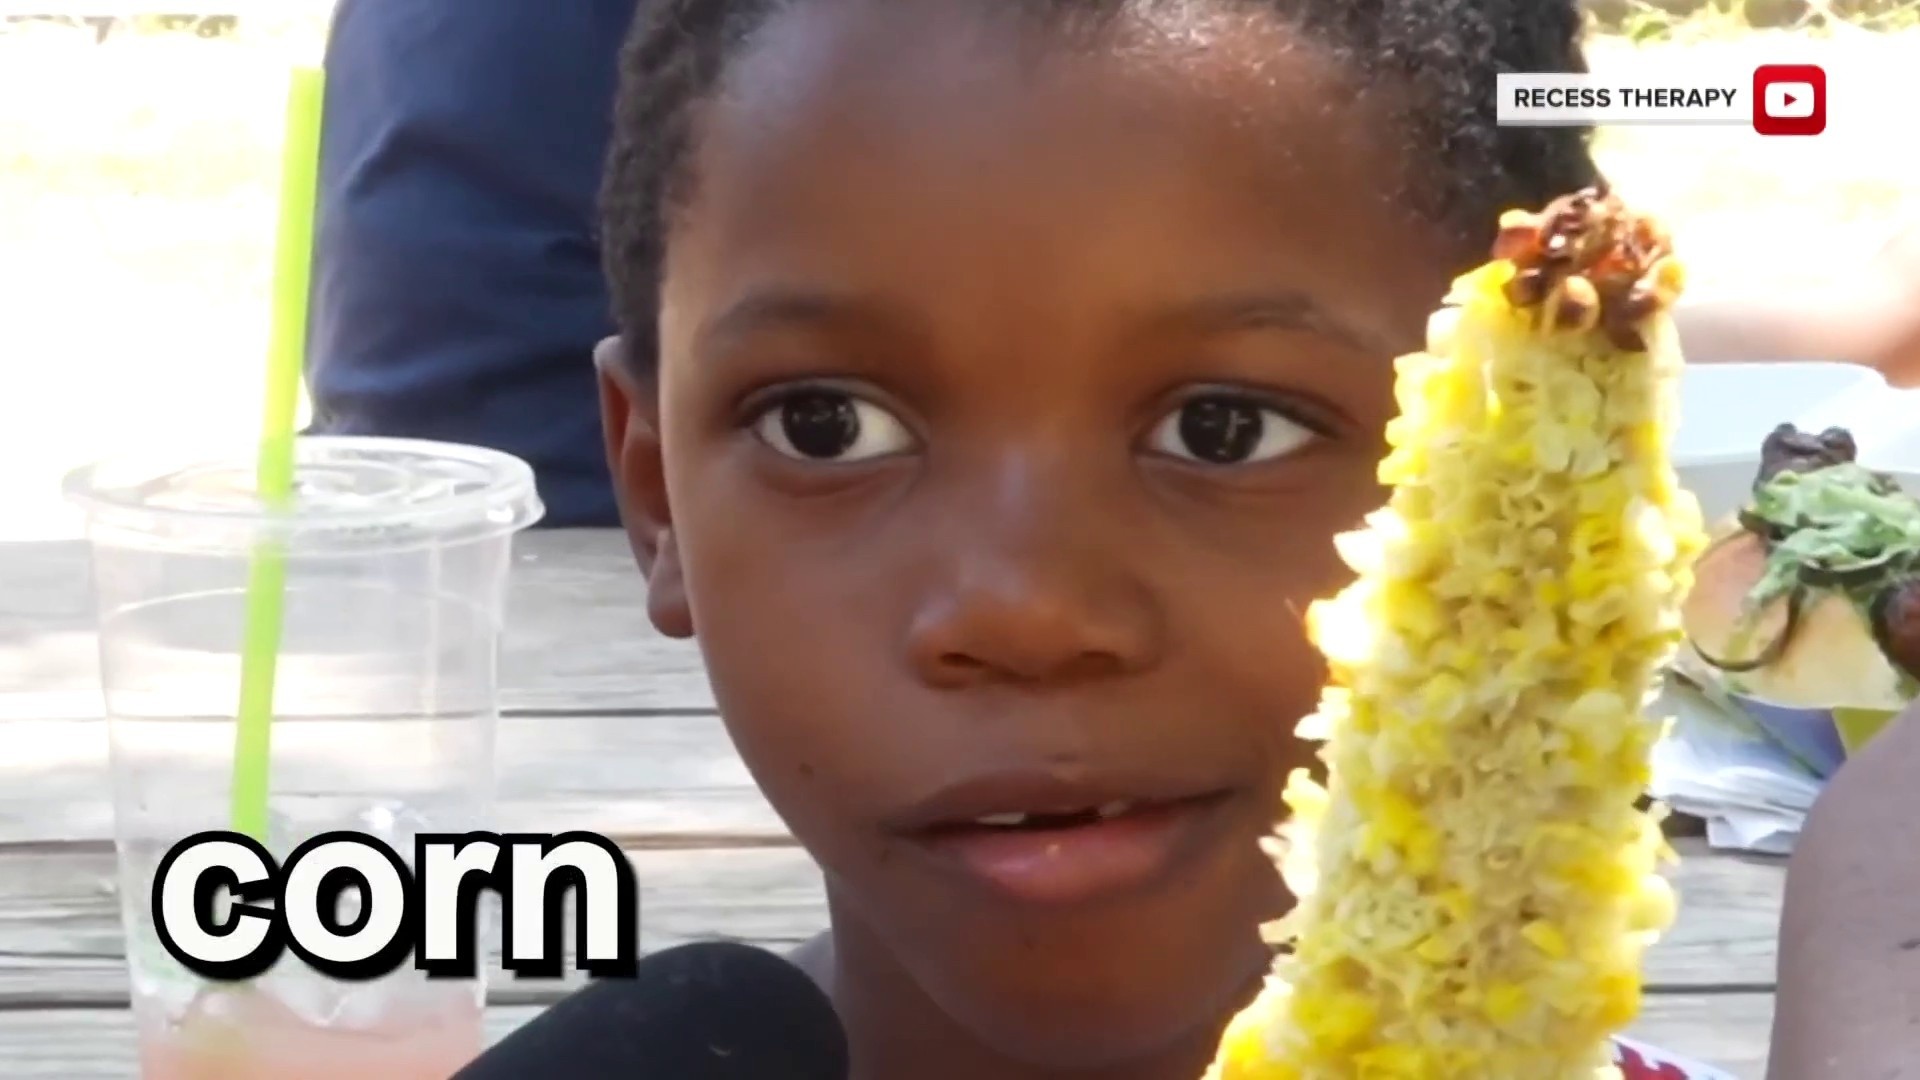 Corn kidz. Its Corn. OMG its Corn. OMG its Korn.